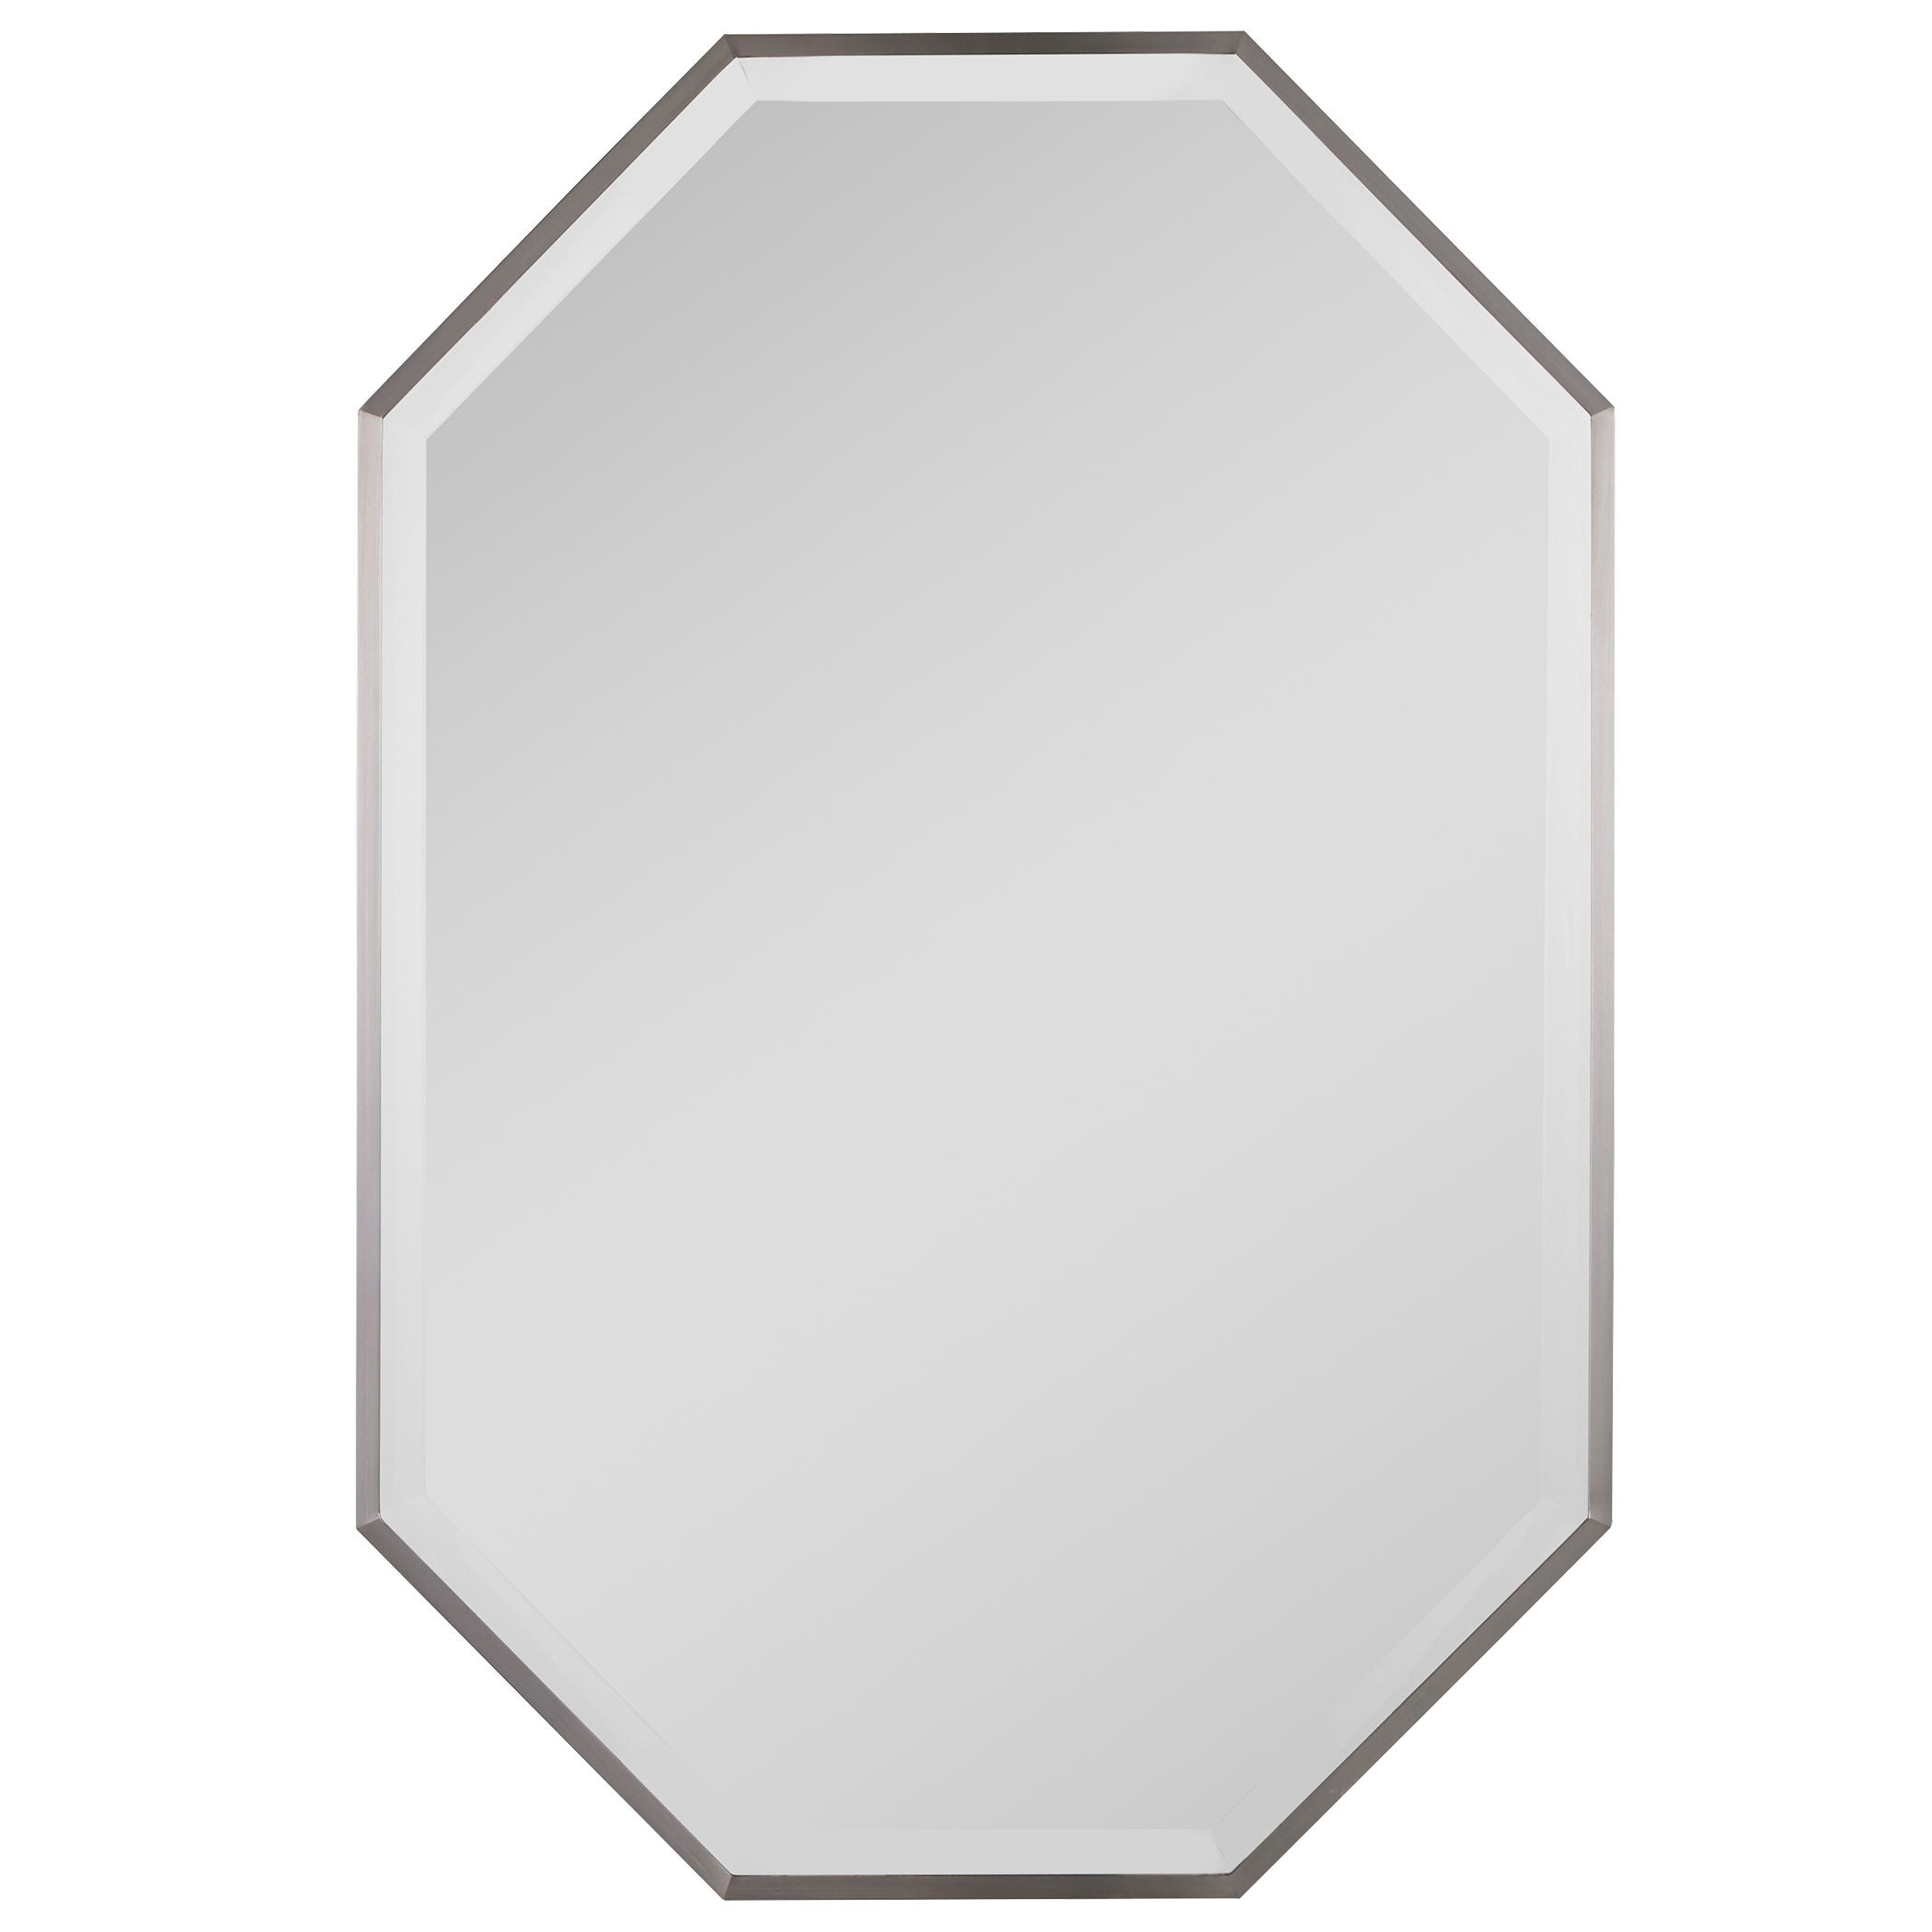 Stuartson - Octagon Vanity Mirror - Pearl Silver